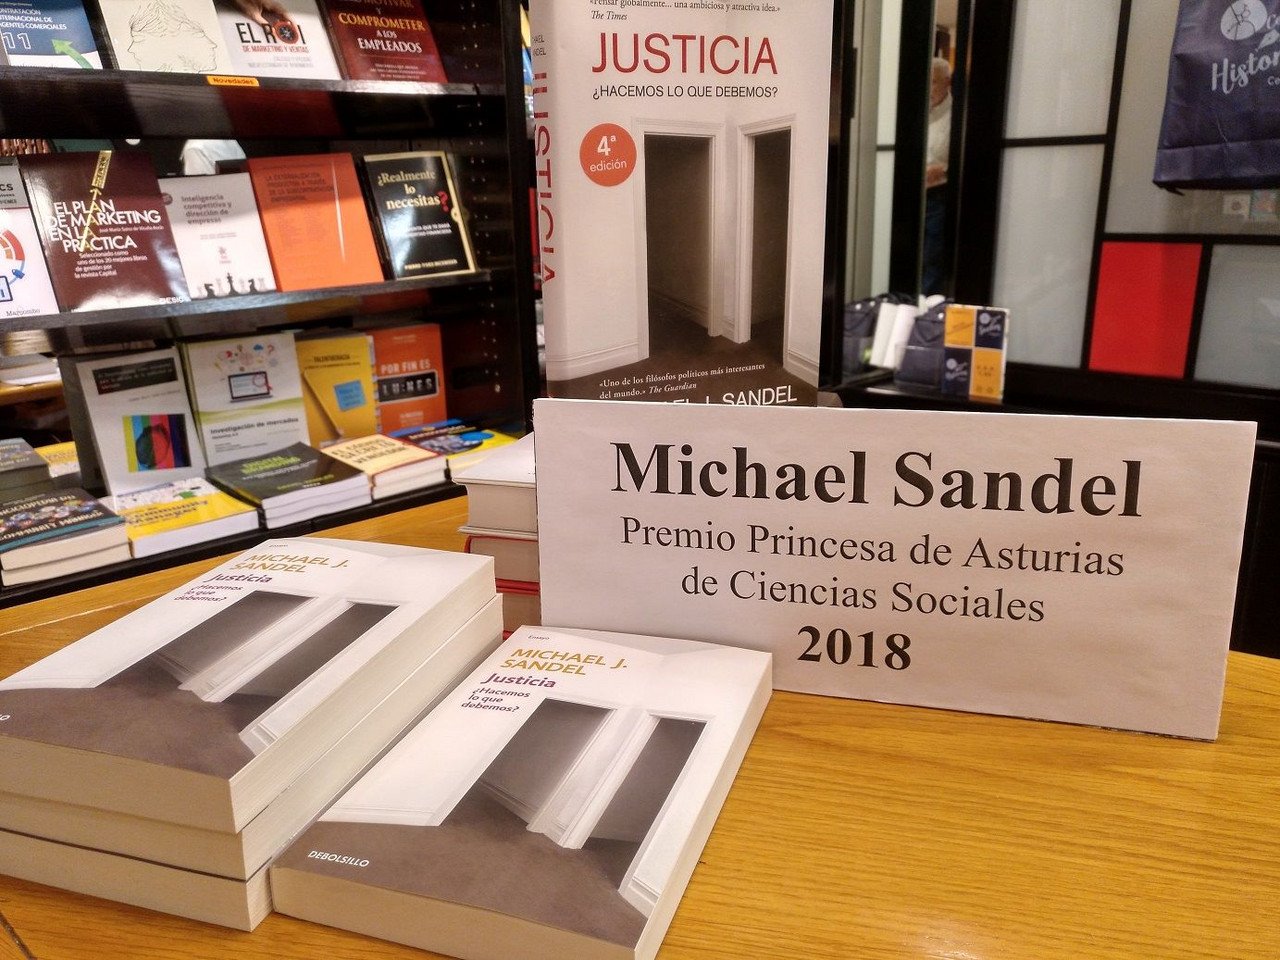 Justicia, ¿hacemos lo que debemos? De Michael J. Sandel, un viaje a la reflexión y a la moral